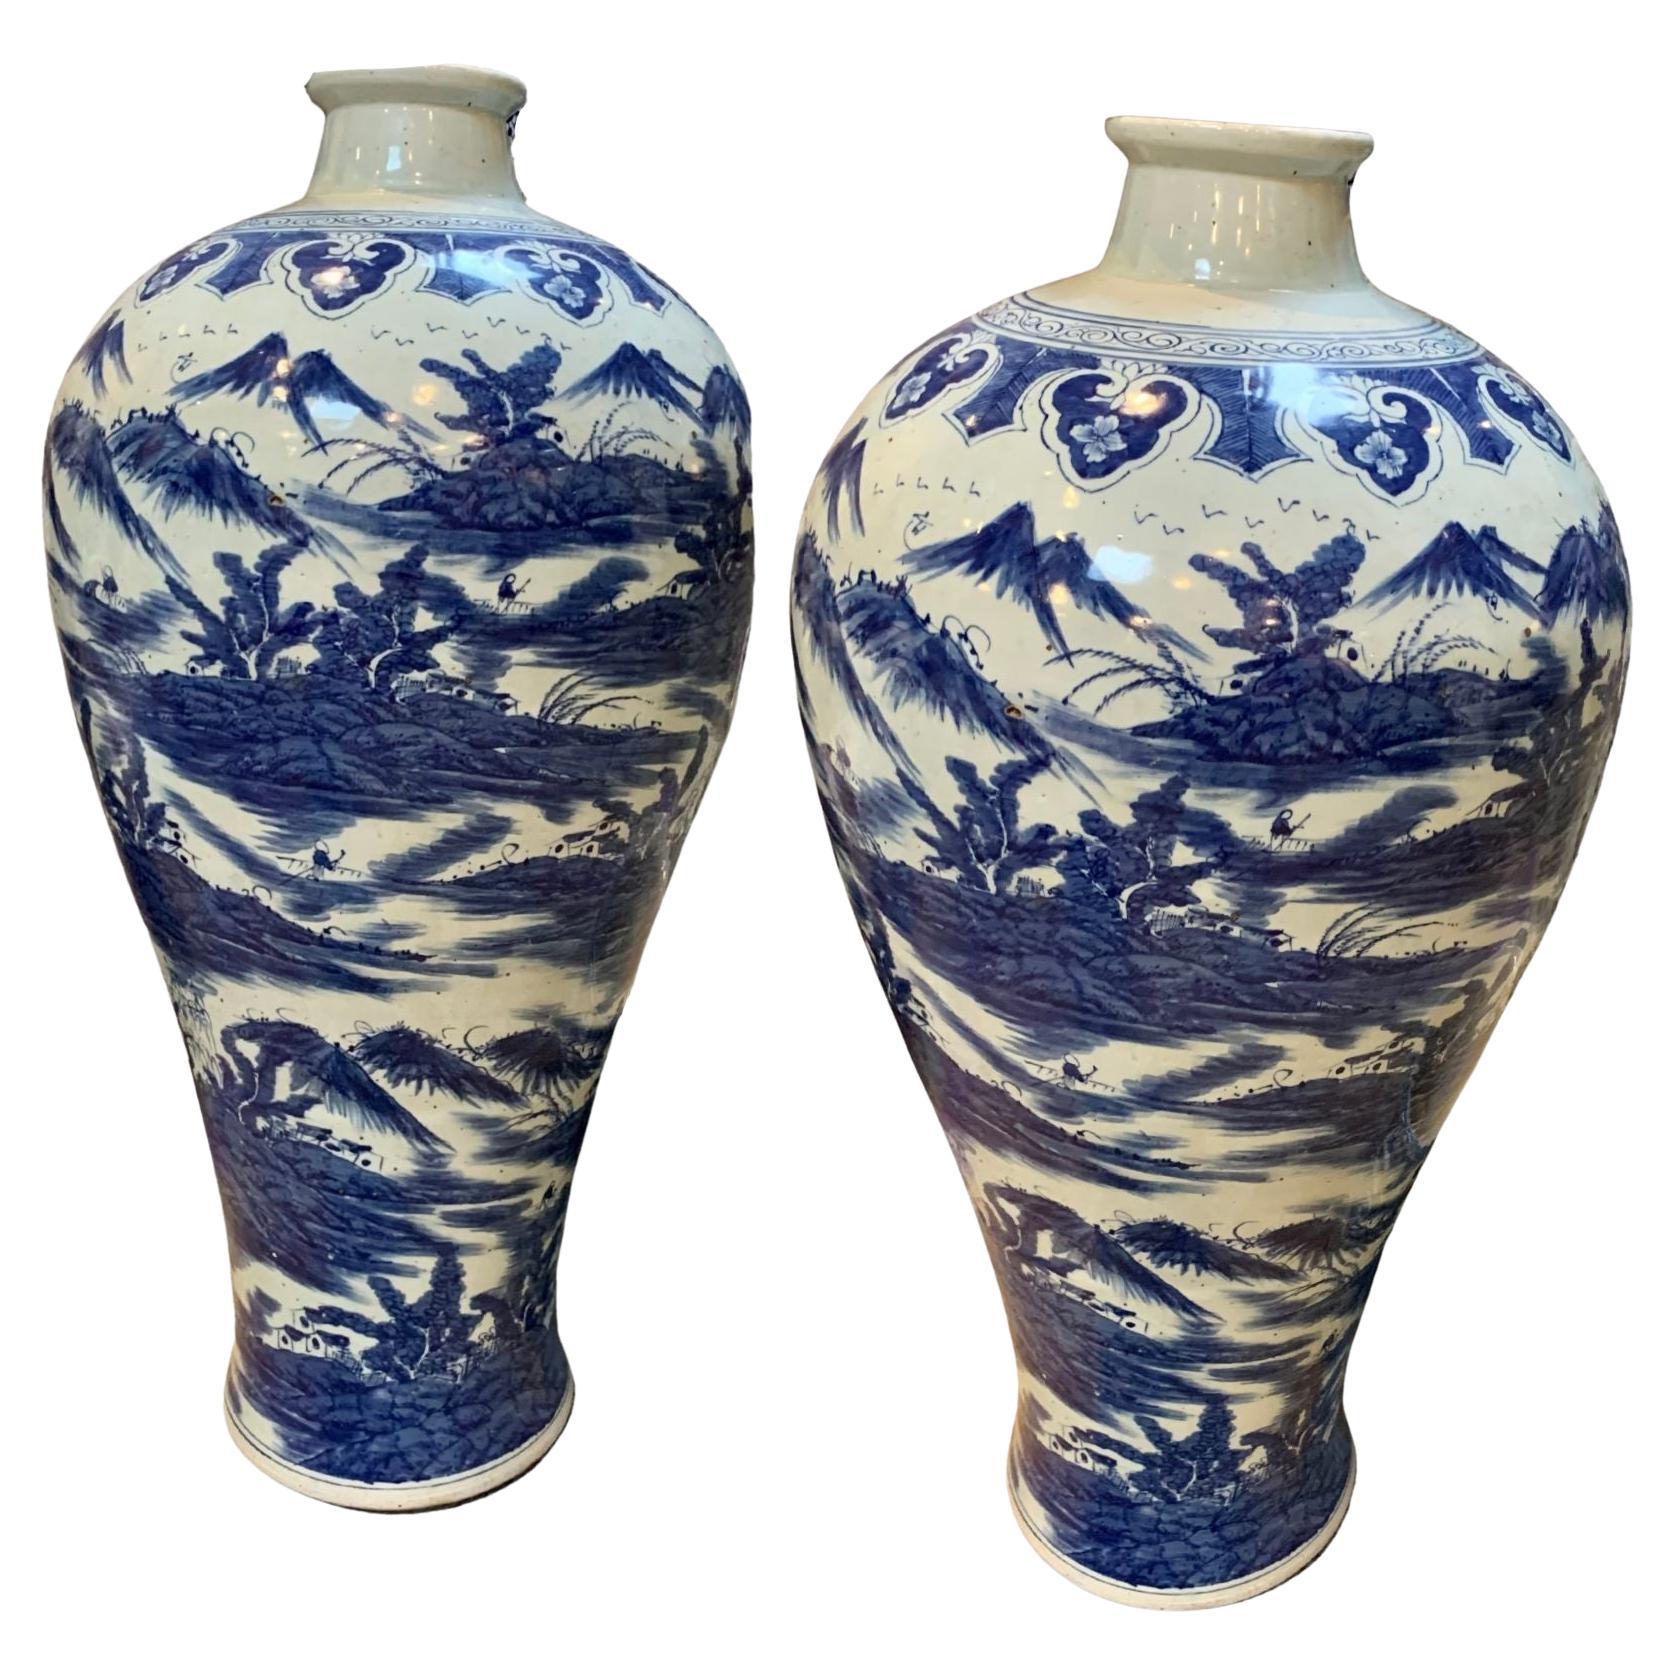 Large Chang Dynasty Porcelain Vases For Sale